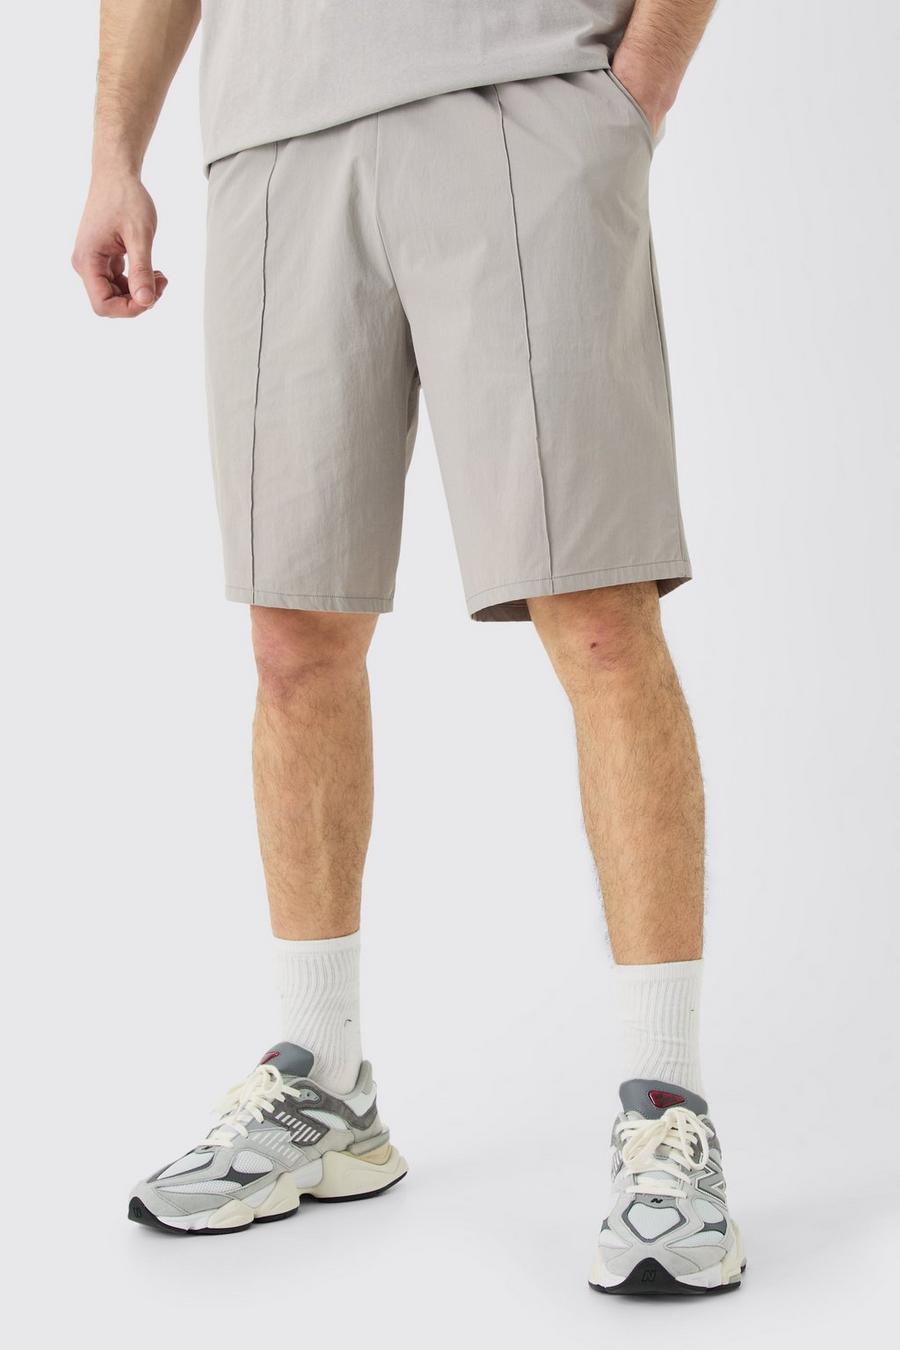 Pantaloncini Tall in nylon con vita elasticizzata, nervature e cuciture, Grey